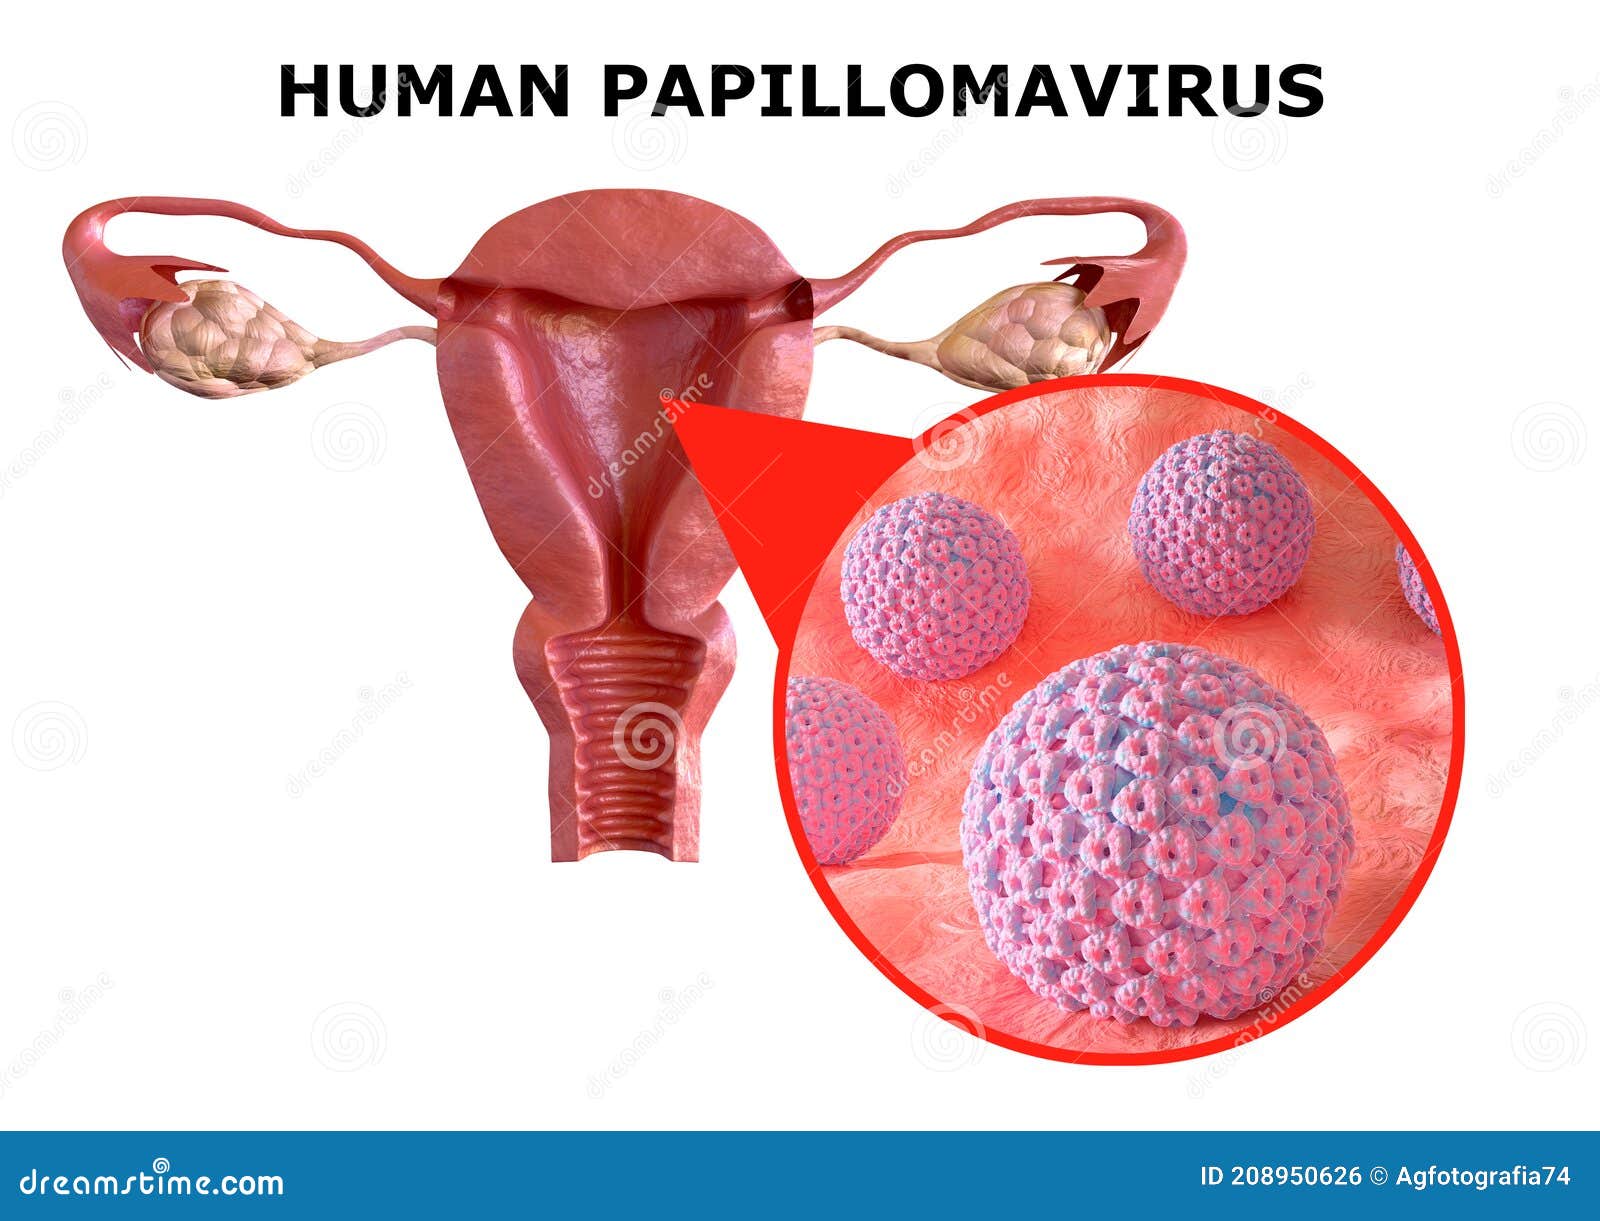 human papillomavirus infection types of warts